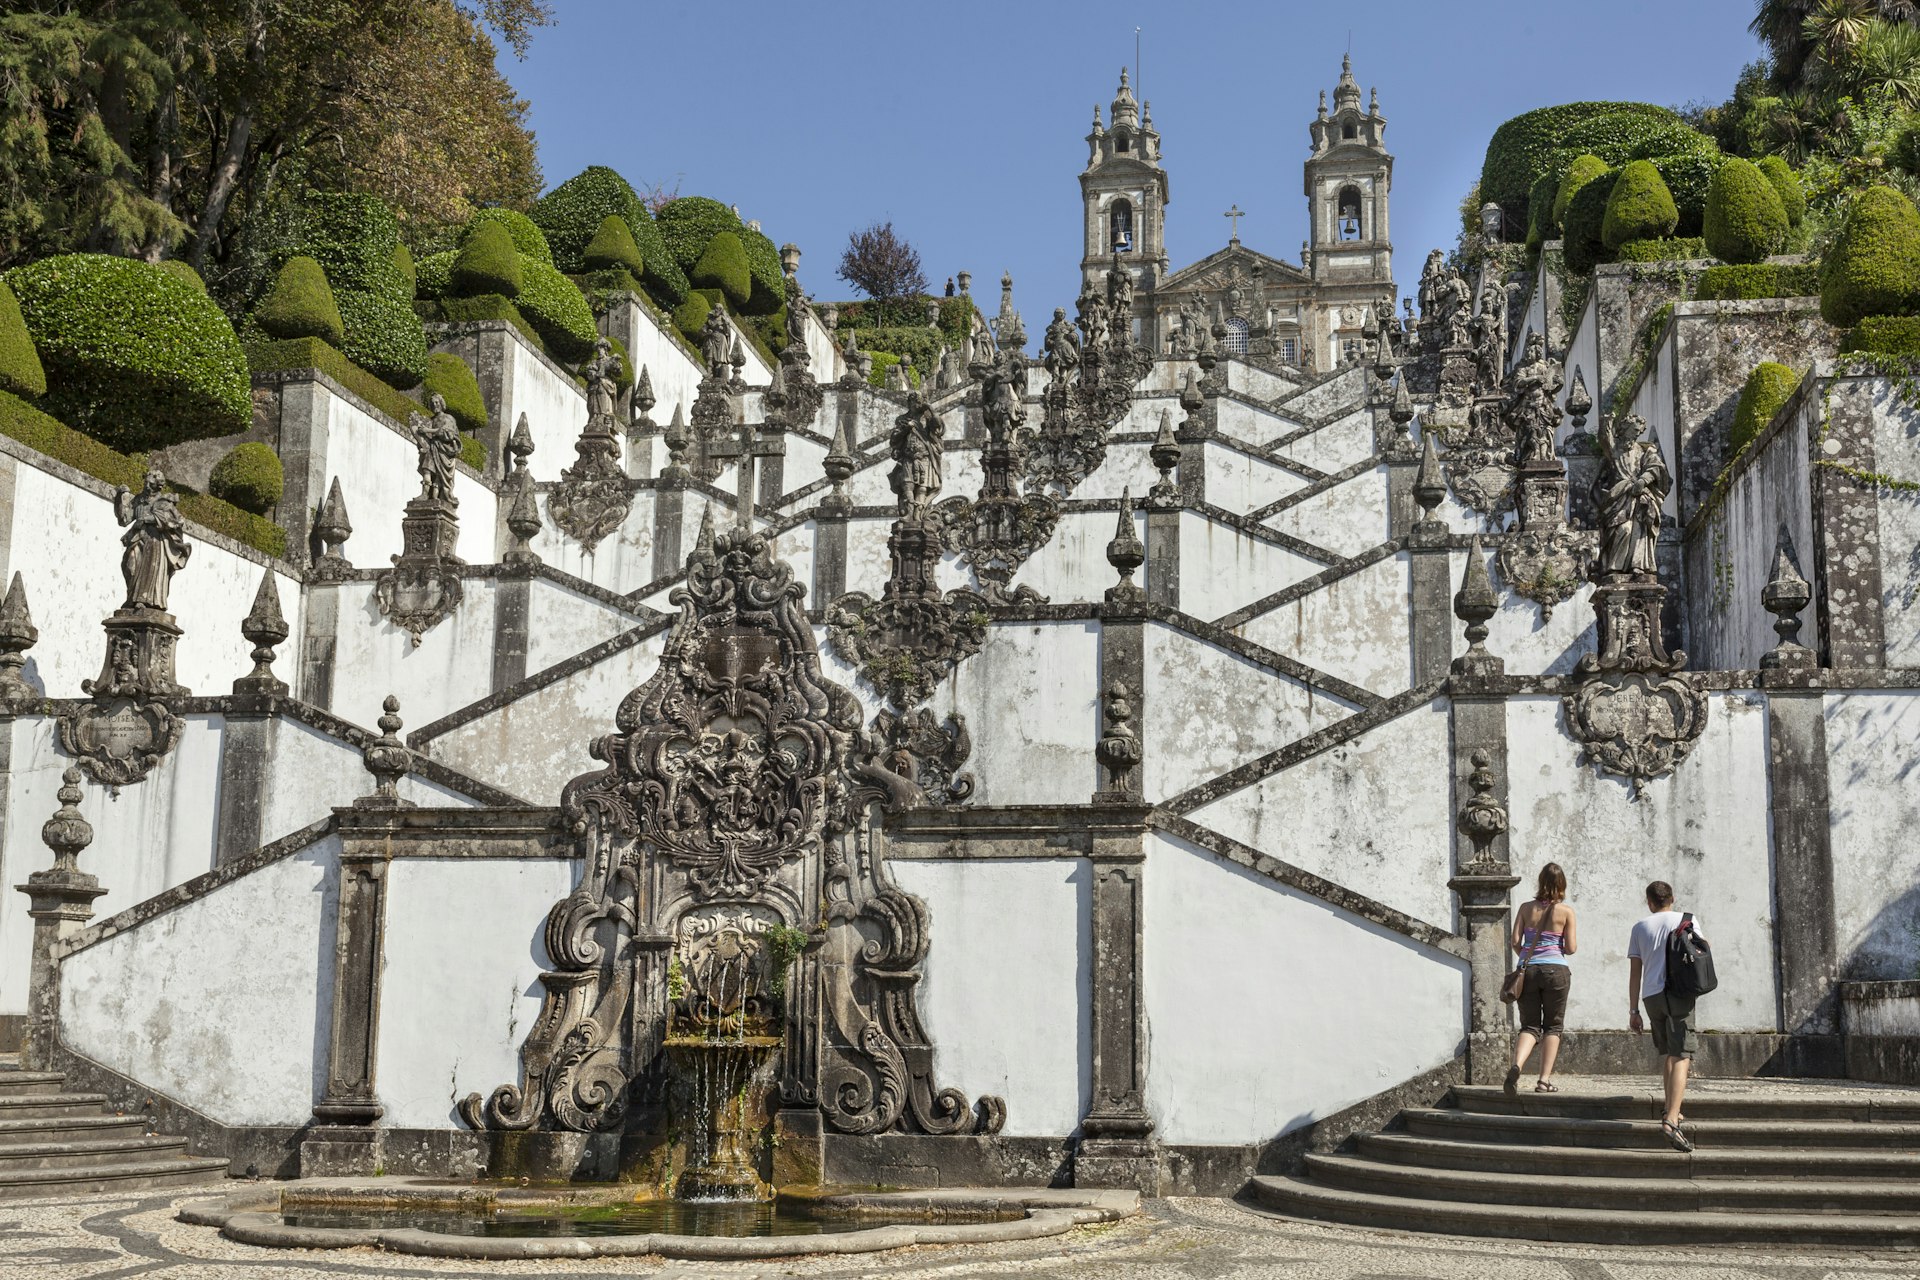 Туристы поднимаются по ступенькам в Бом-Жезуш-ду-Монте недалеко от Браги, Португалия.